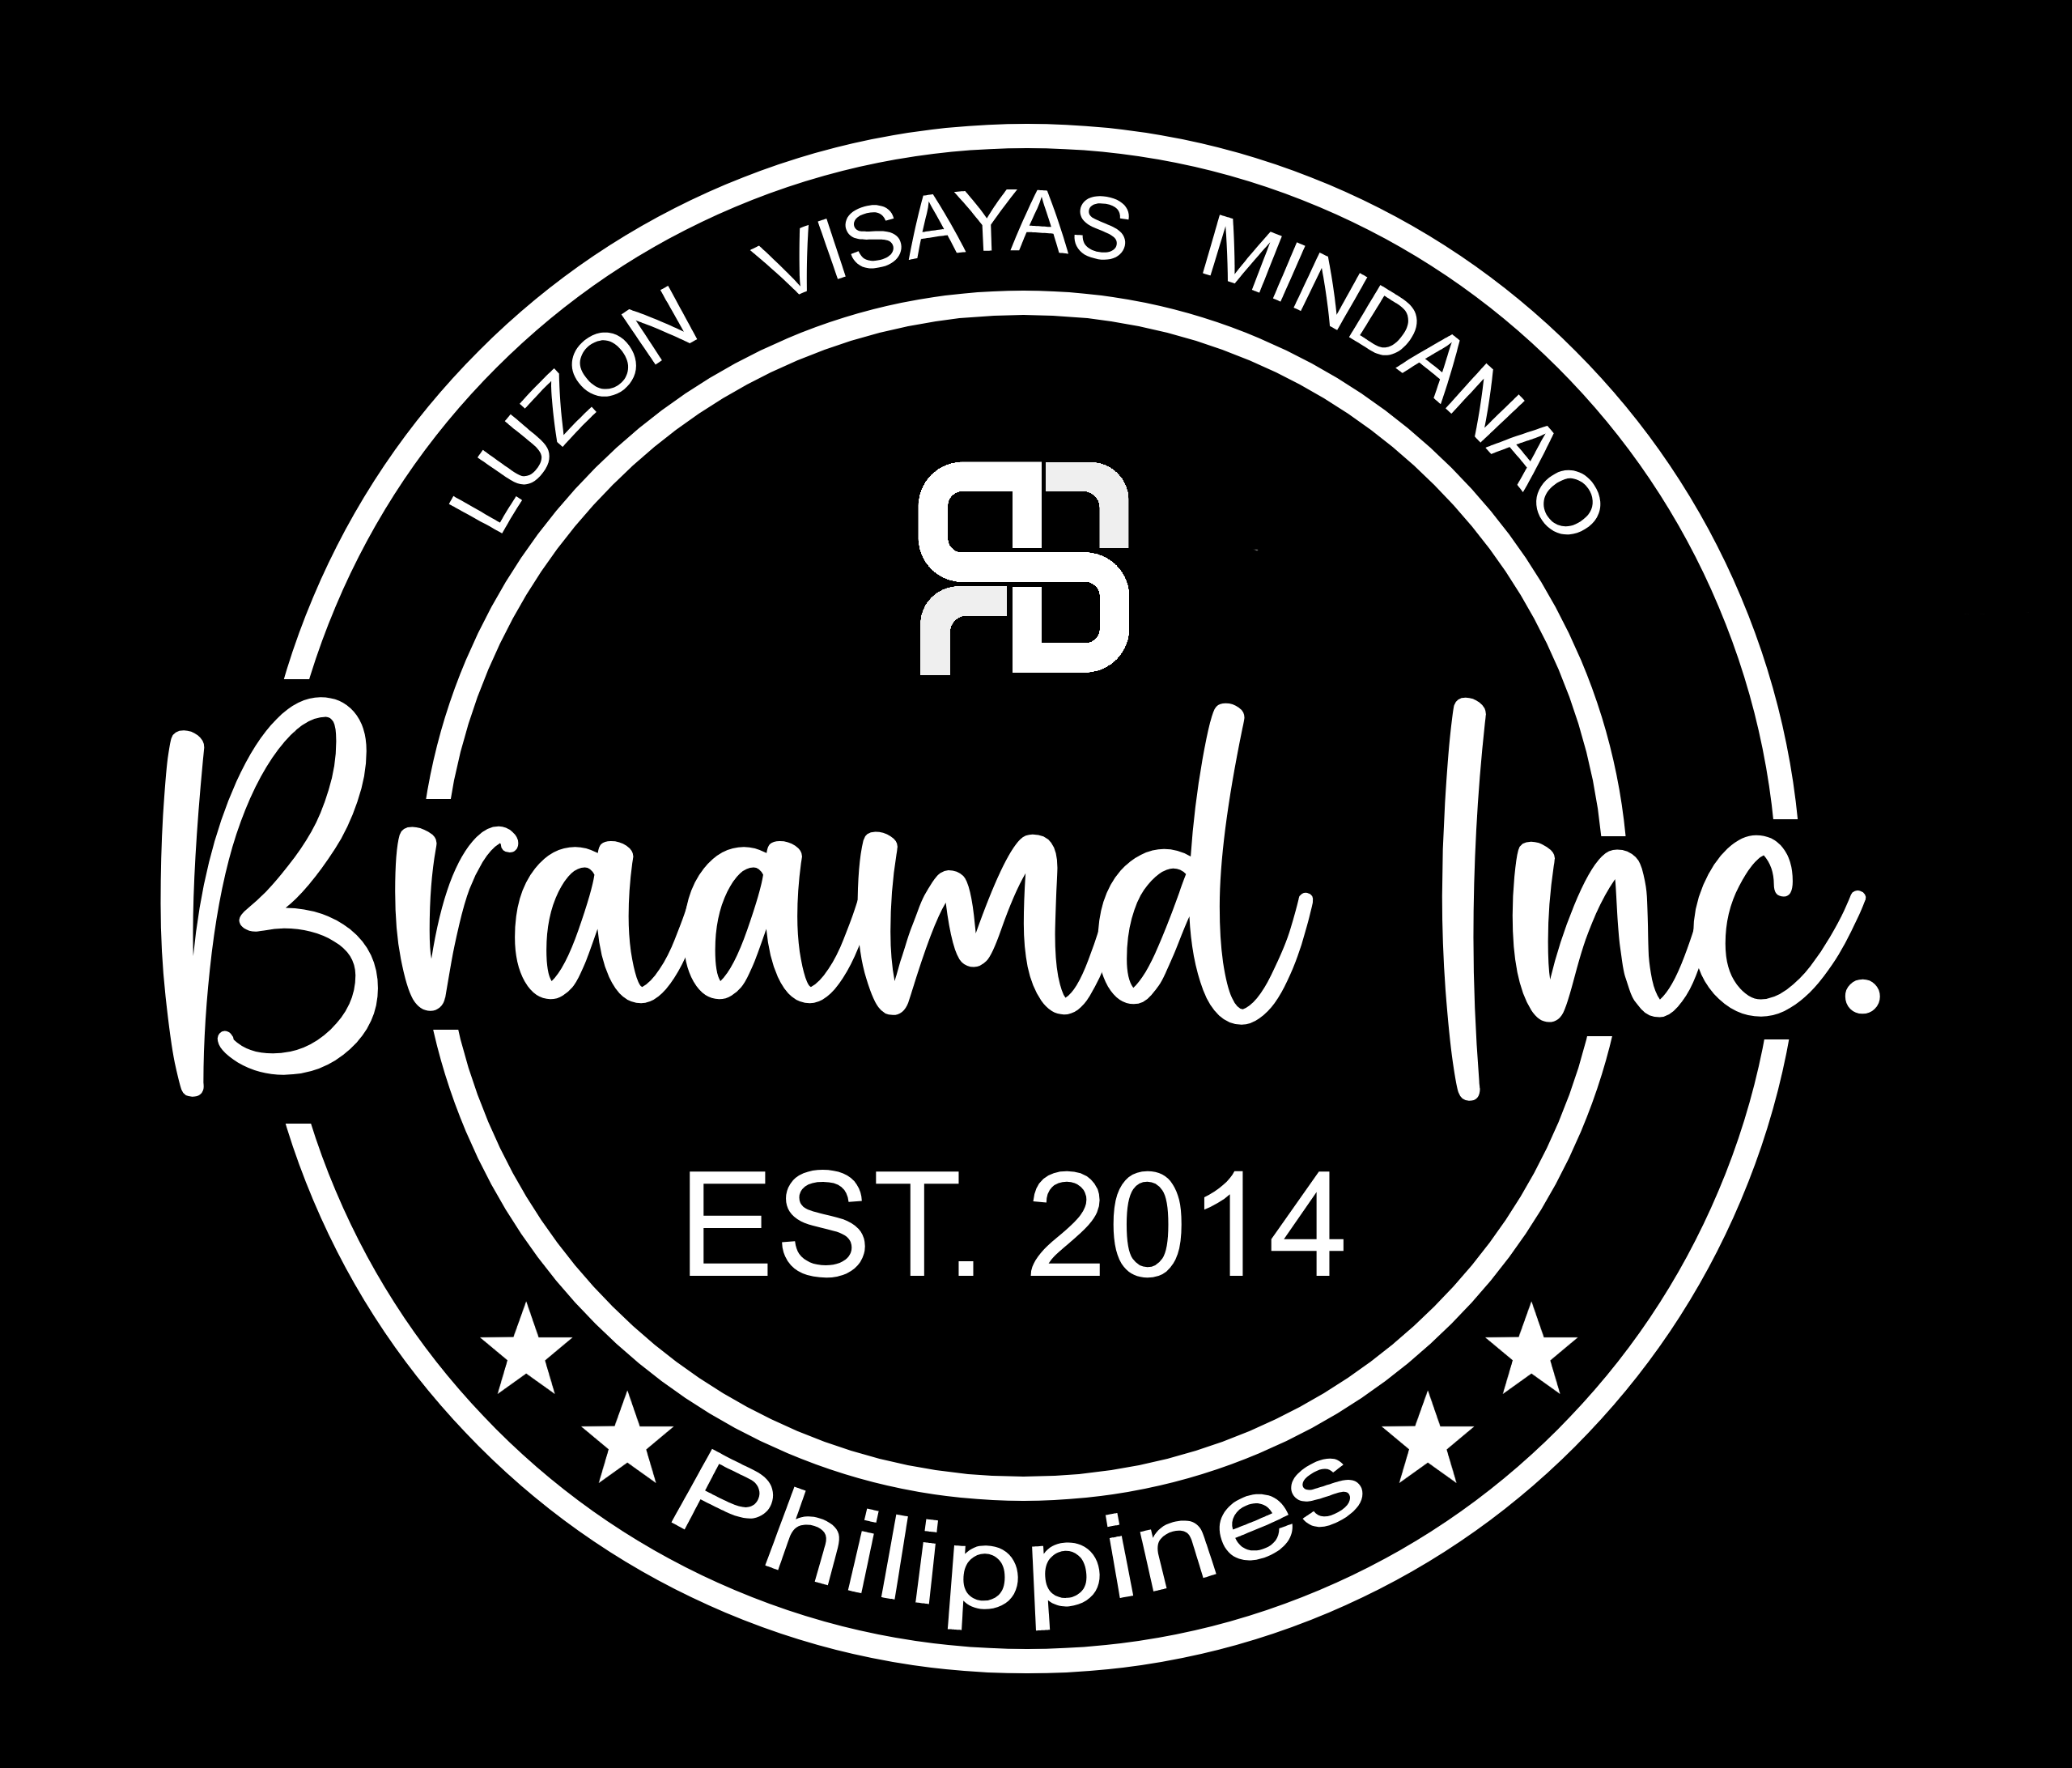 Braamd Inc. Established 2014